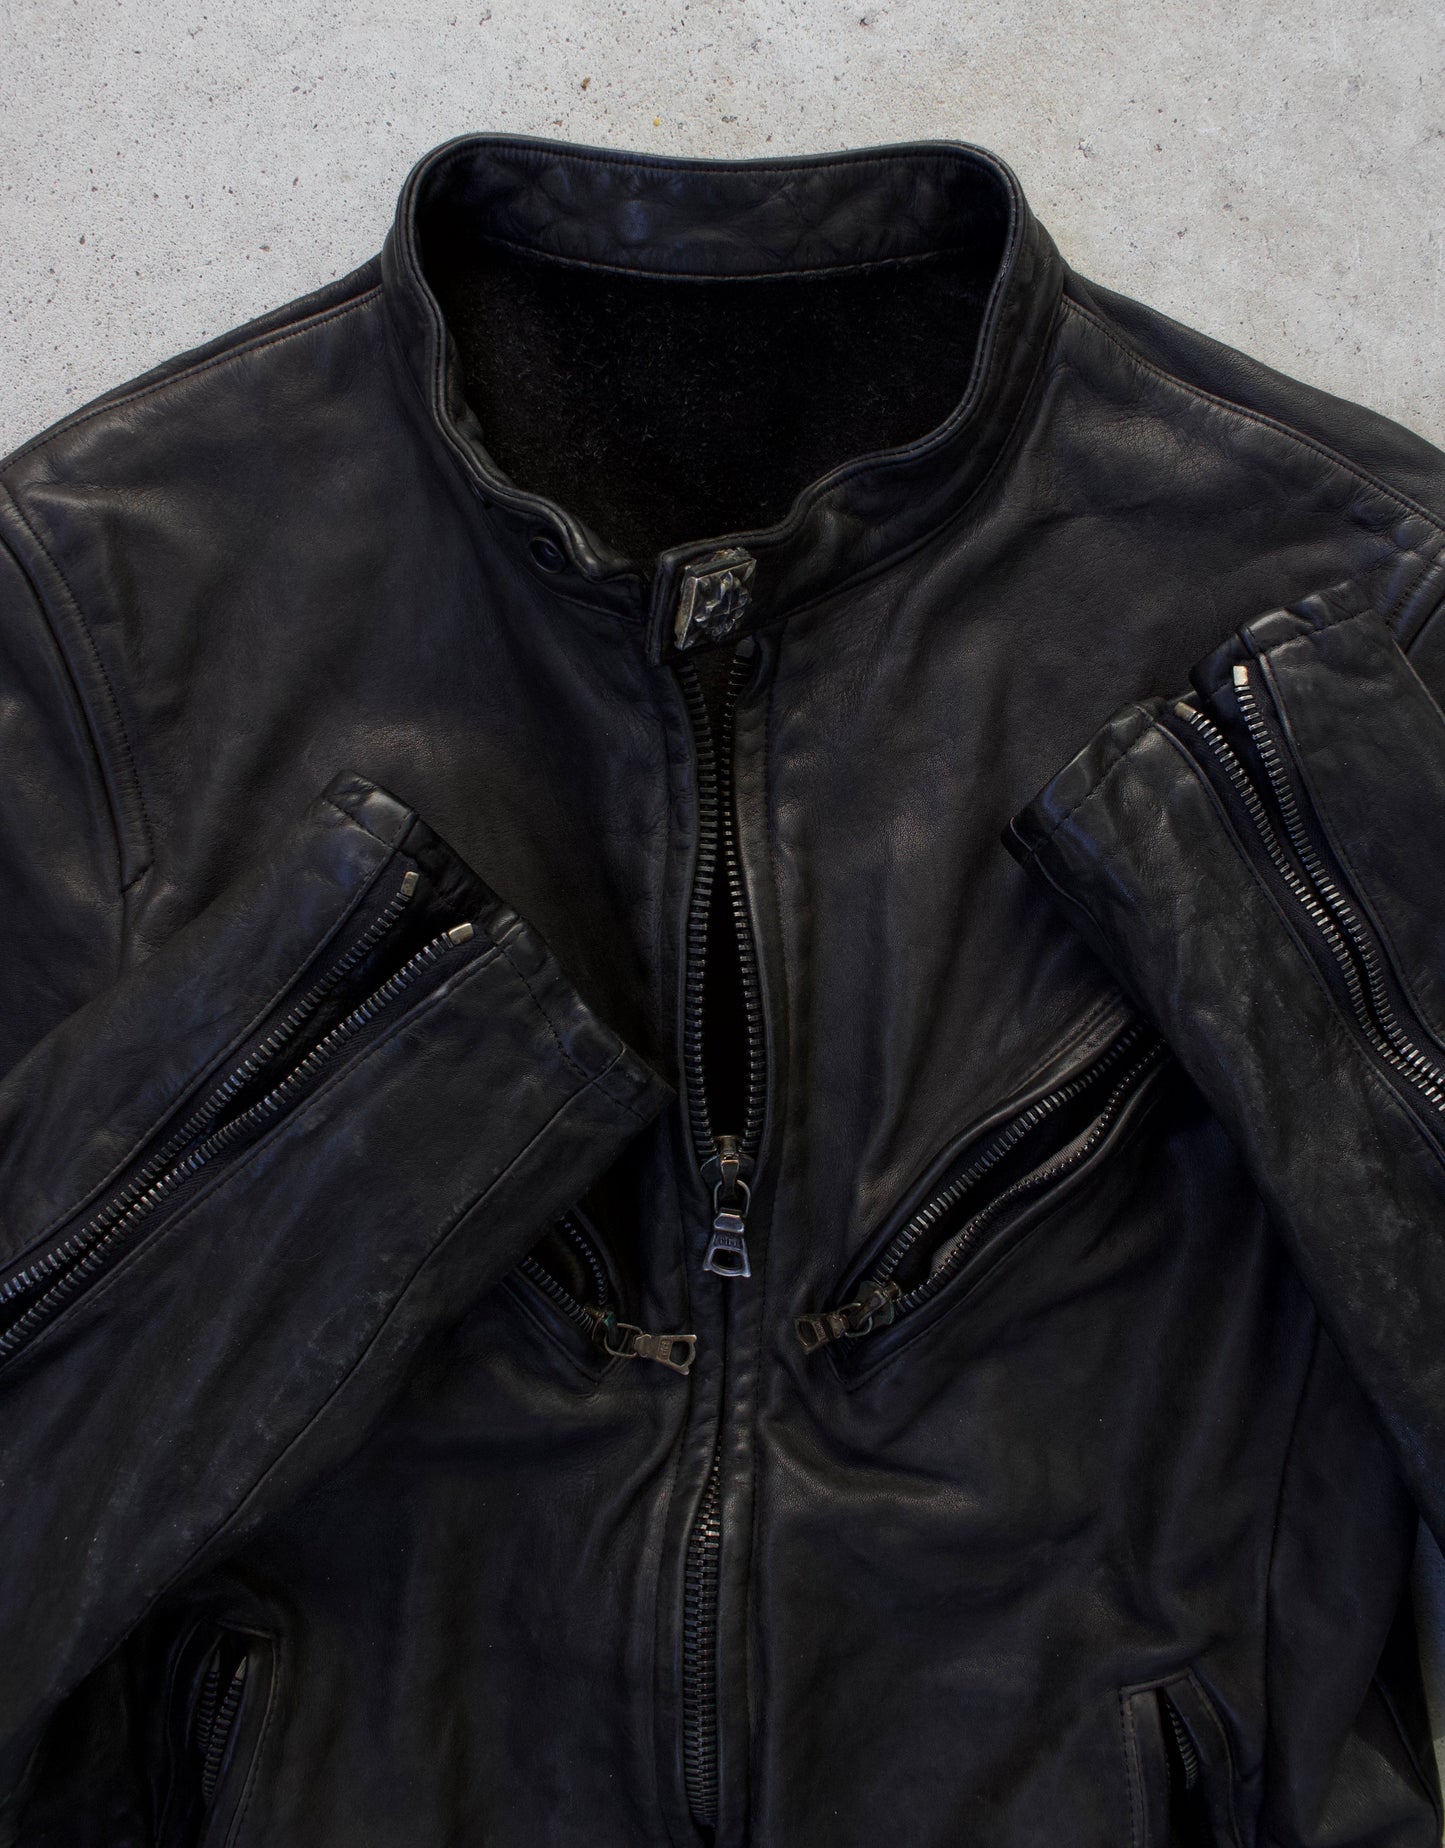 Isamu Katayama “Backlash” SS11 Object-Dyed Studded Calf-Leather Rider Jacket